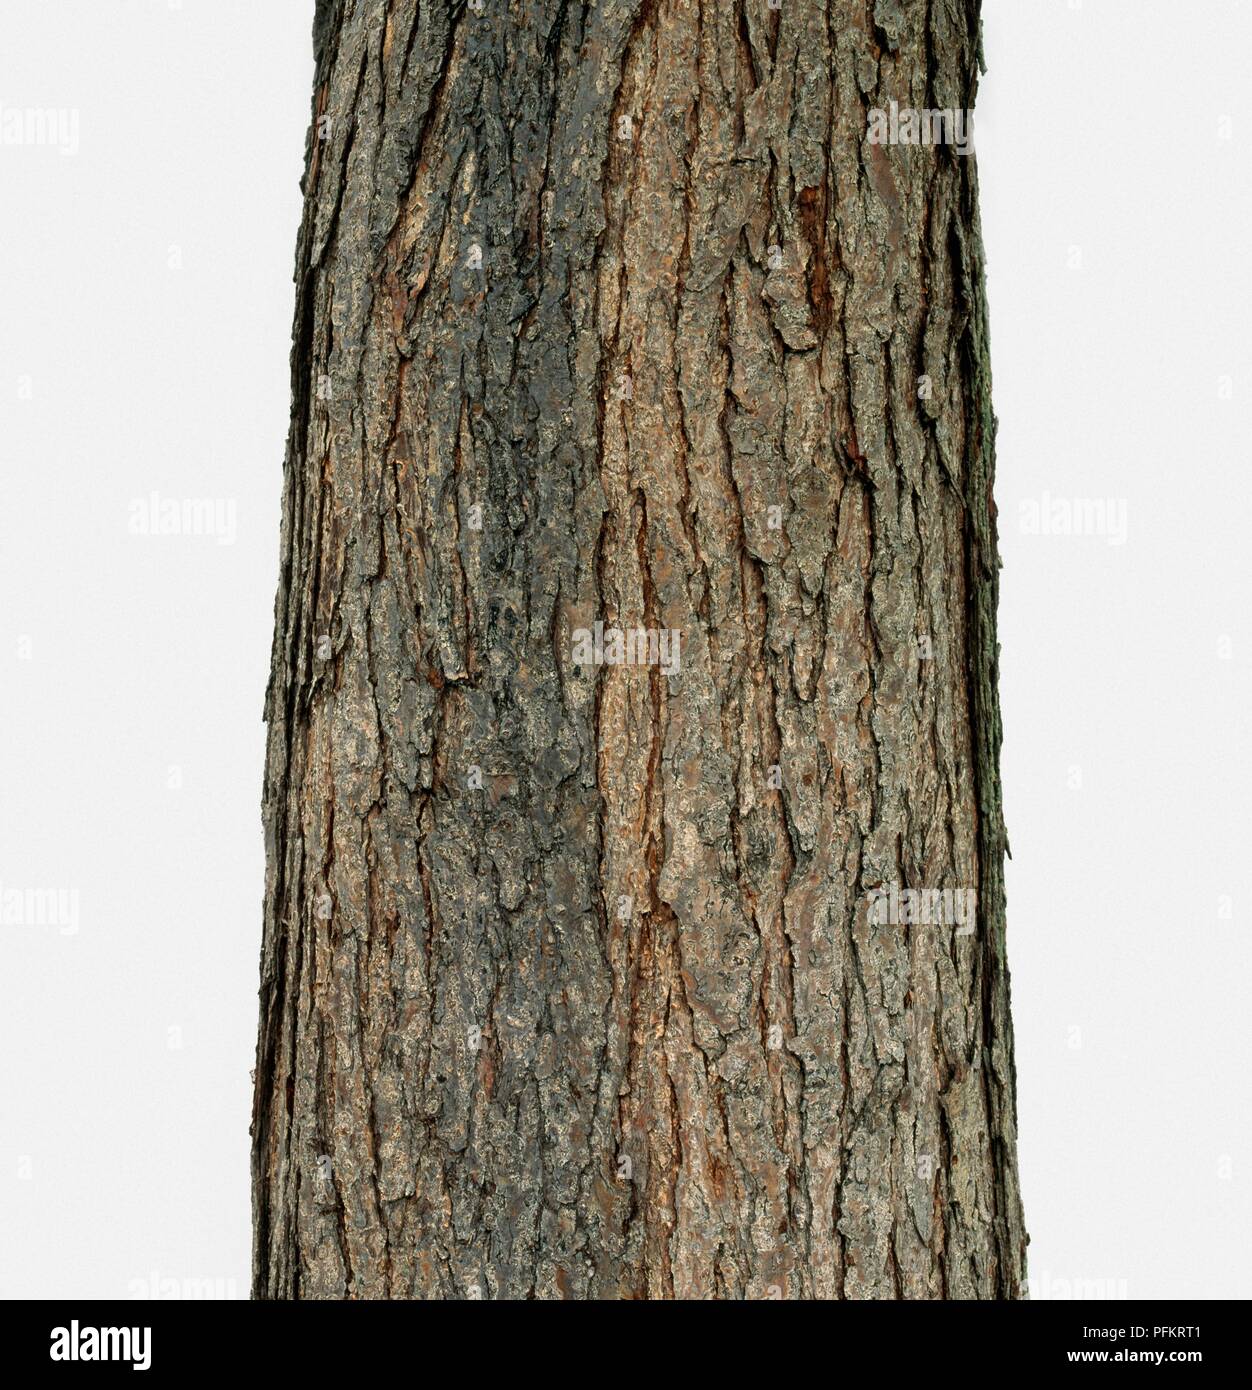 Toona sinensis (Cina) in mogano, corteccia sul tronco di albero, close-up Foto Stock